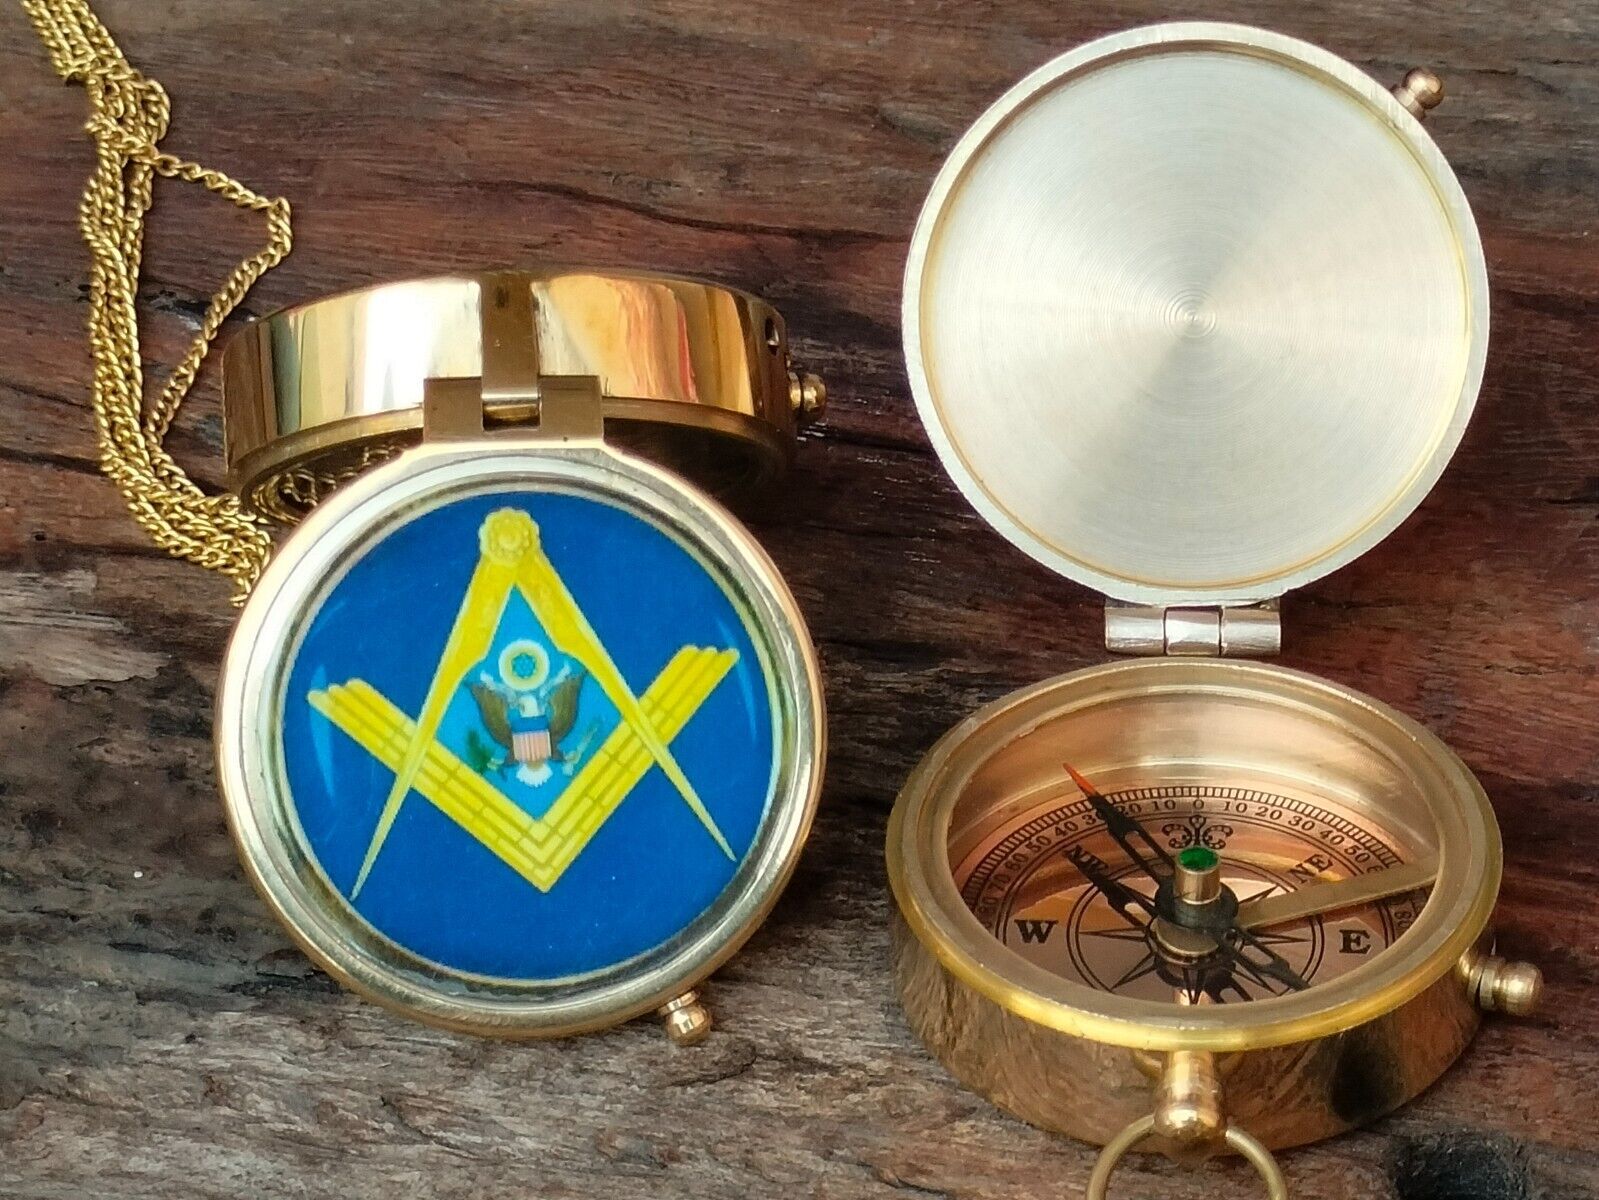 Personalized Masonic Brass Compass Gift With Wooden Box - Masonic Compass